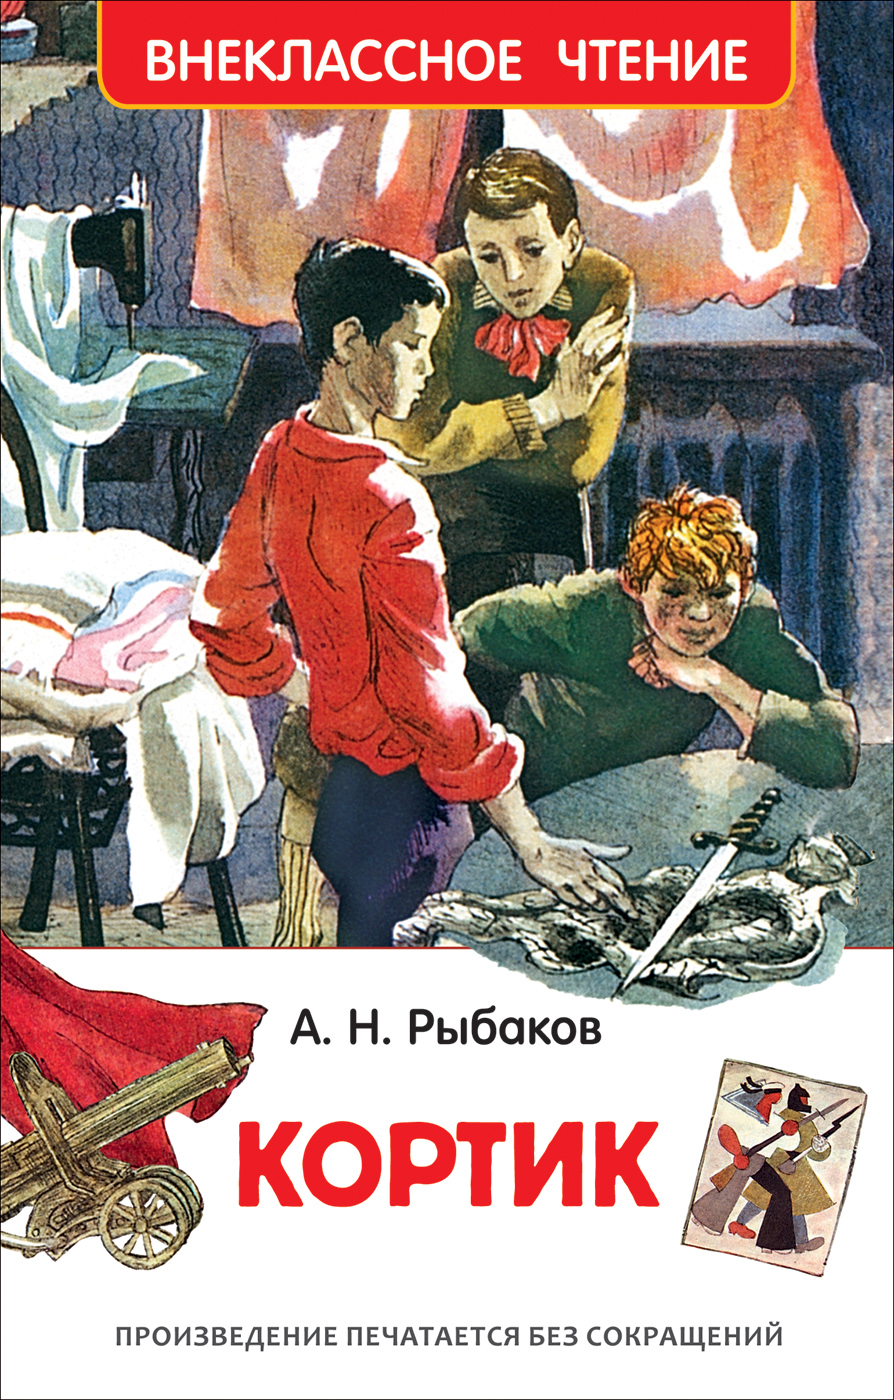 Книга 32436 "Рисунки на асфальте" Голявкин В. (ВЧ) Росмэн - Магнитогорск 